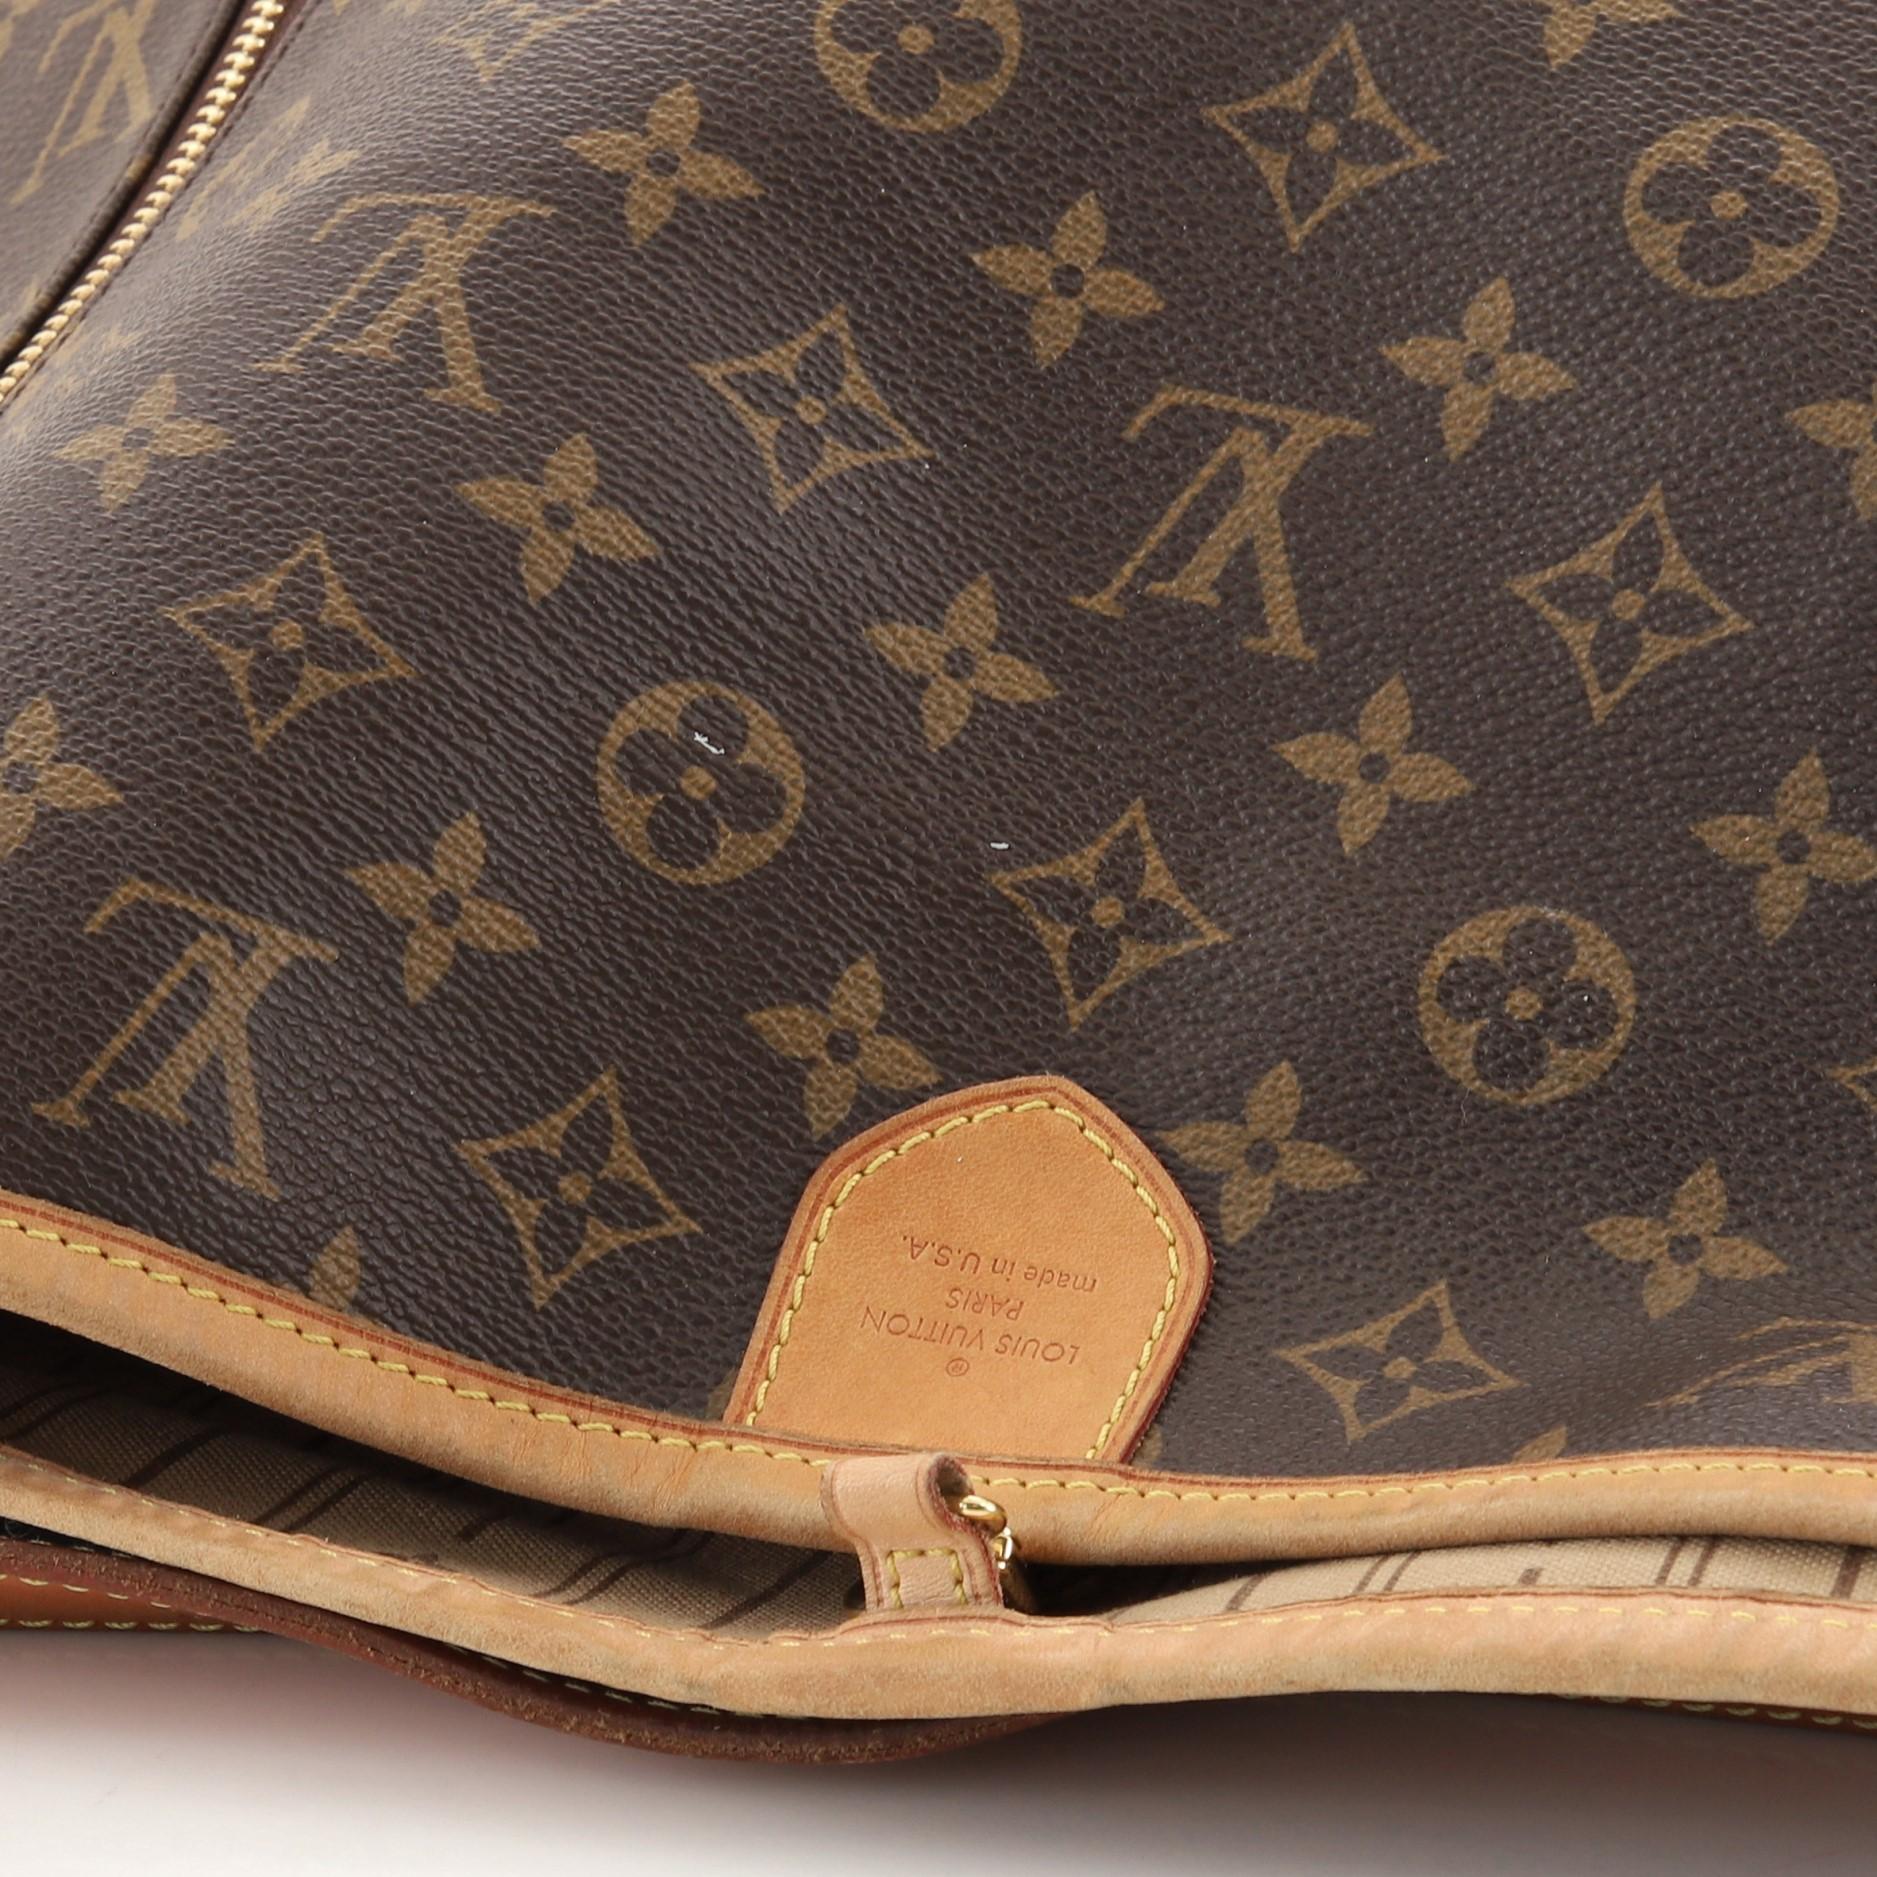 Louis Vuitton Delightful Handbag Monogram Canvas GM 1